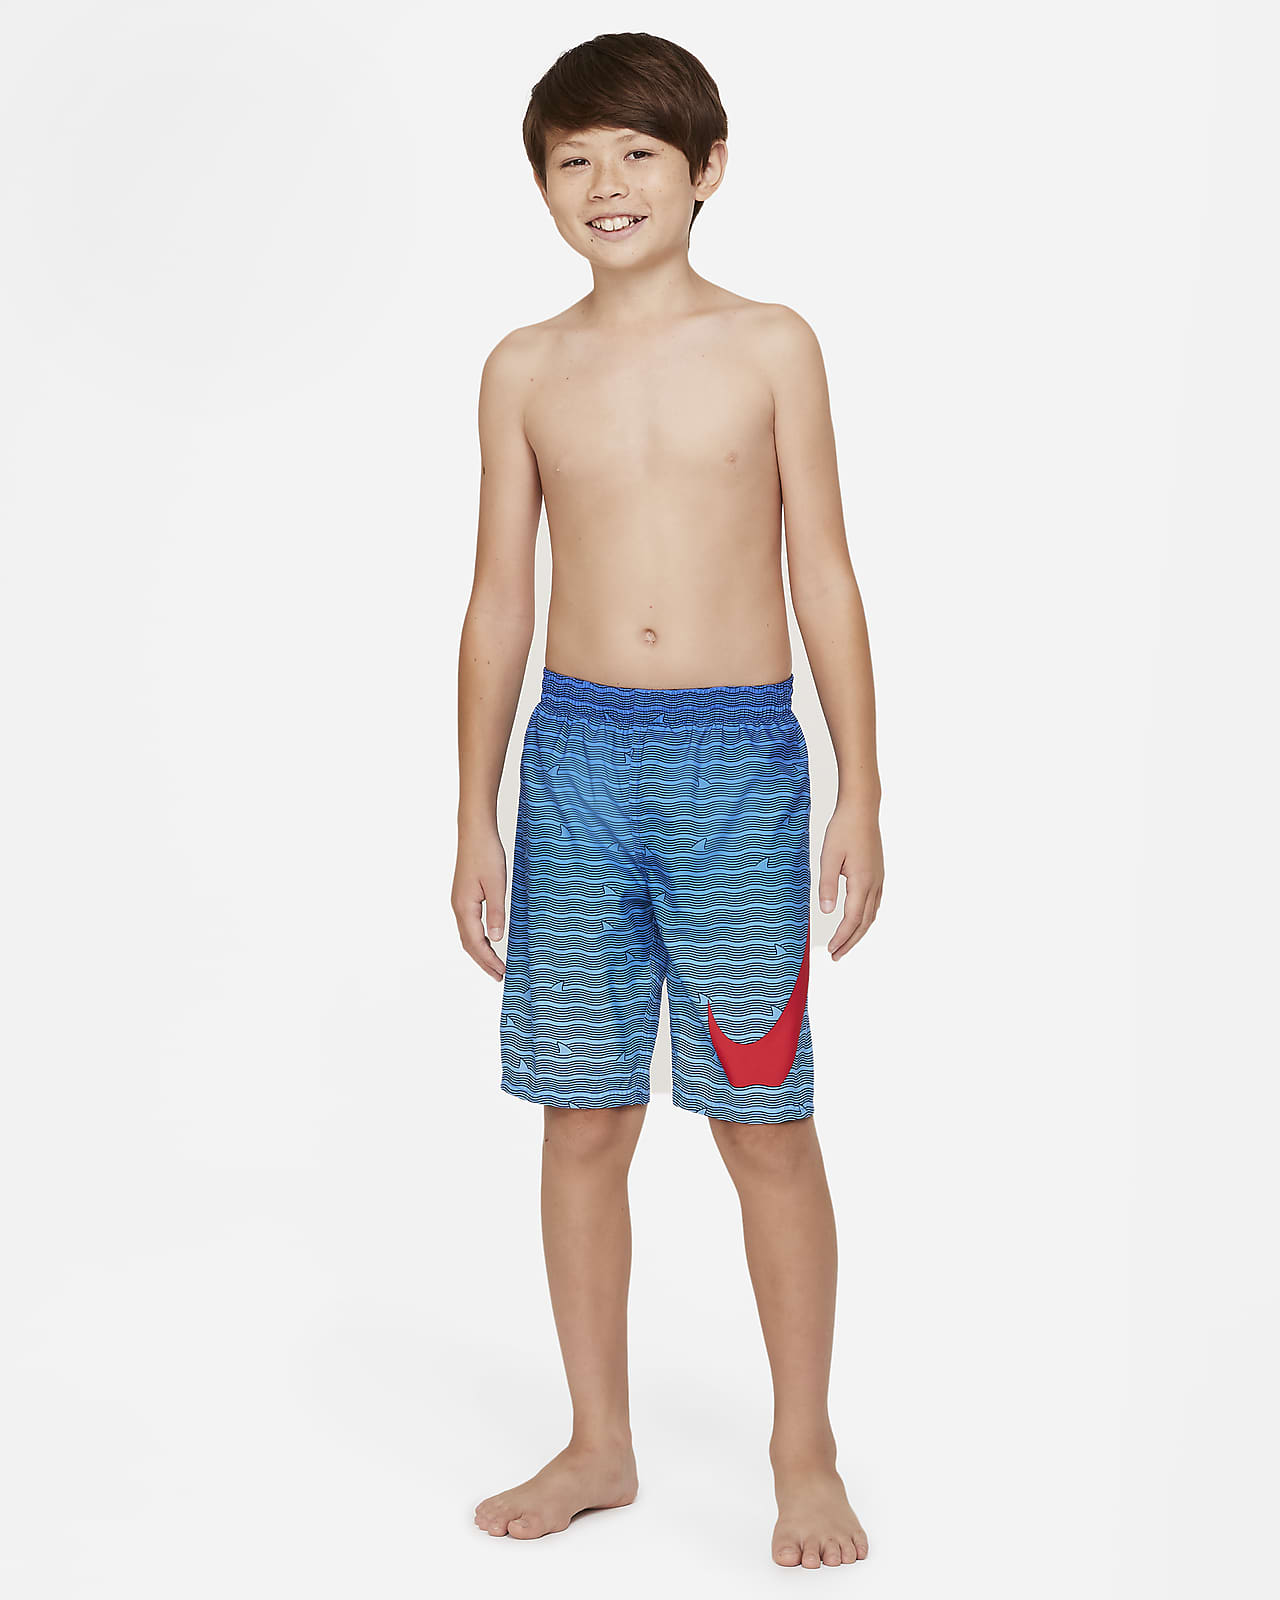 New Long Swim Trunk Red W/ Stripes Boys Bathing Suit Swim Trunks Size Small 8 